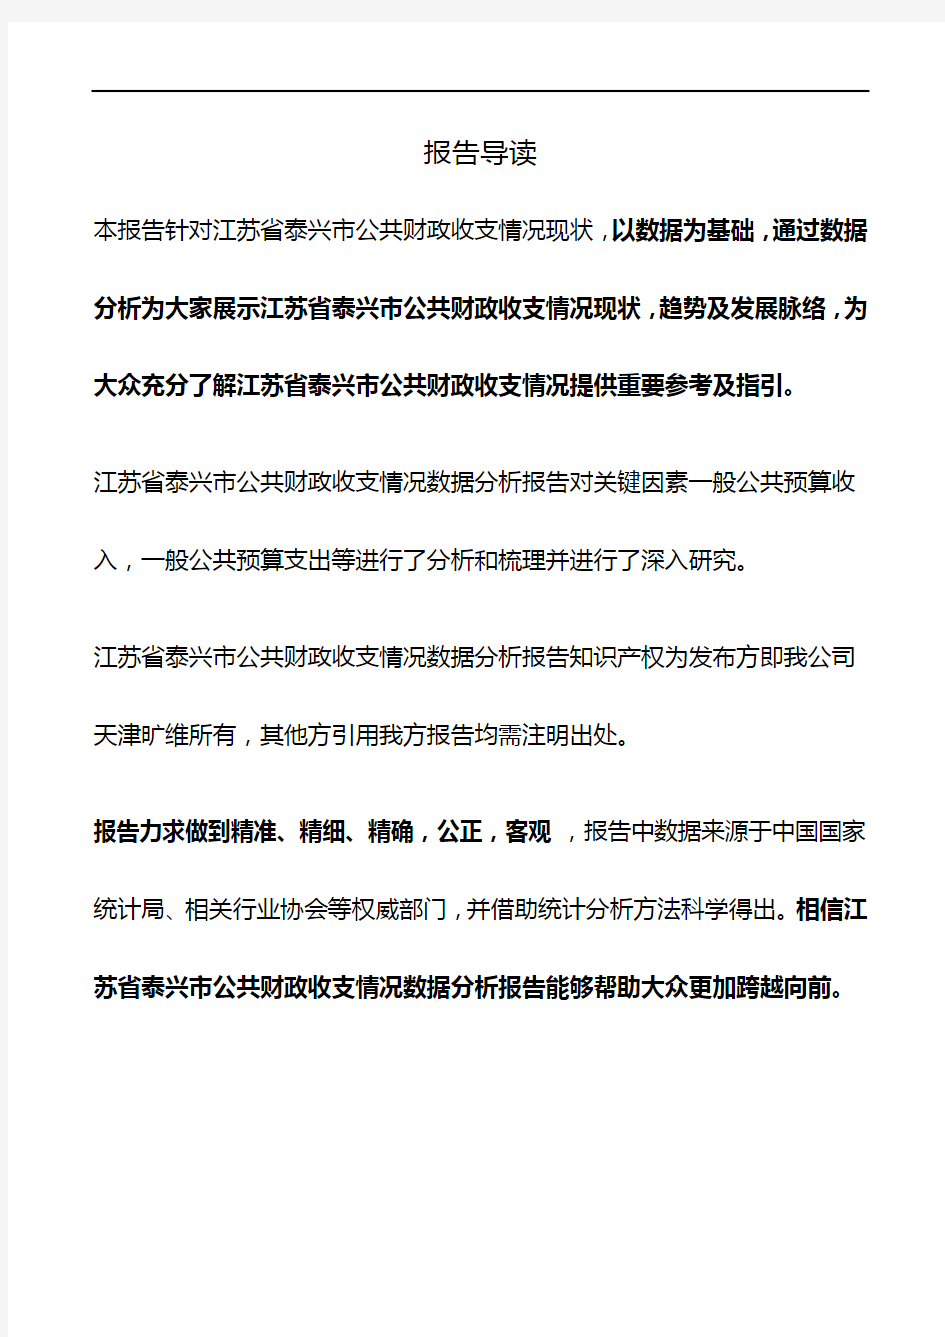 江苏省泰兴市公共财政收支情况3年数据分析报告2019版